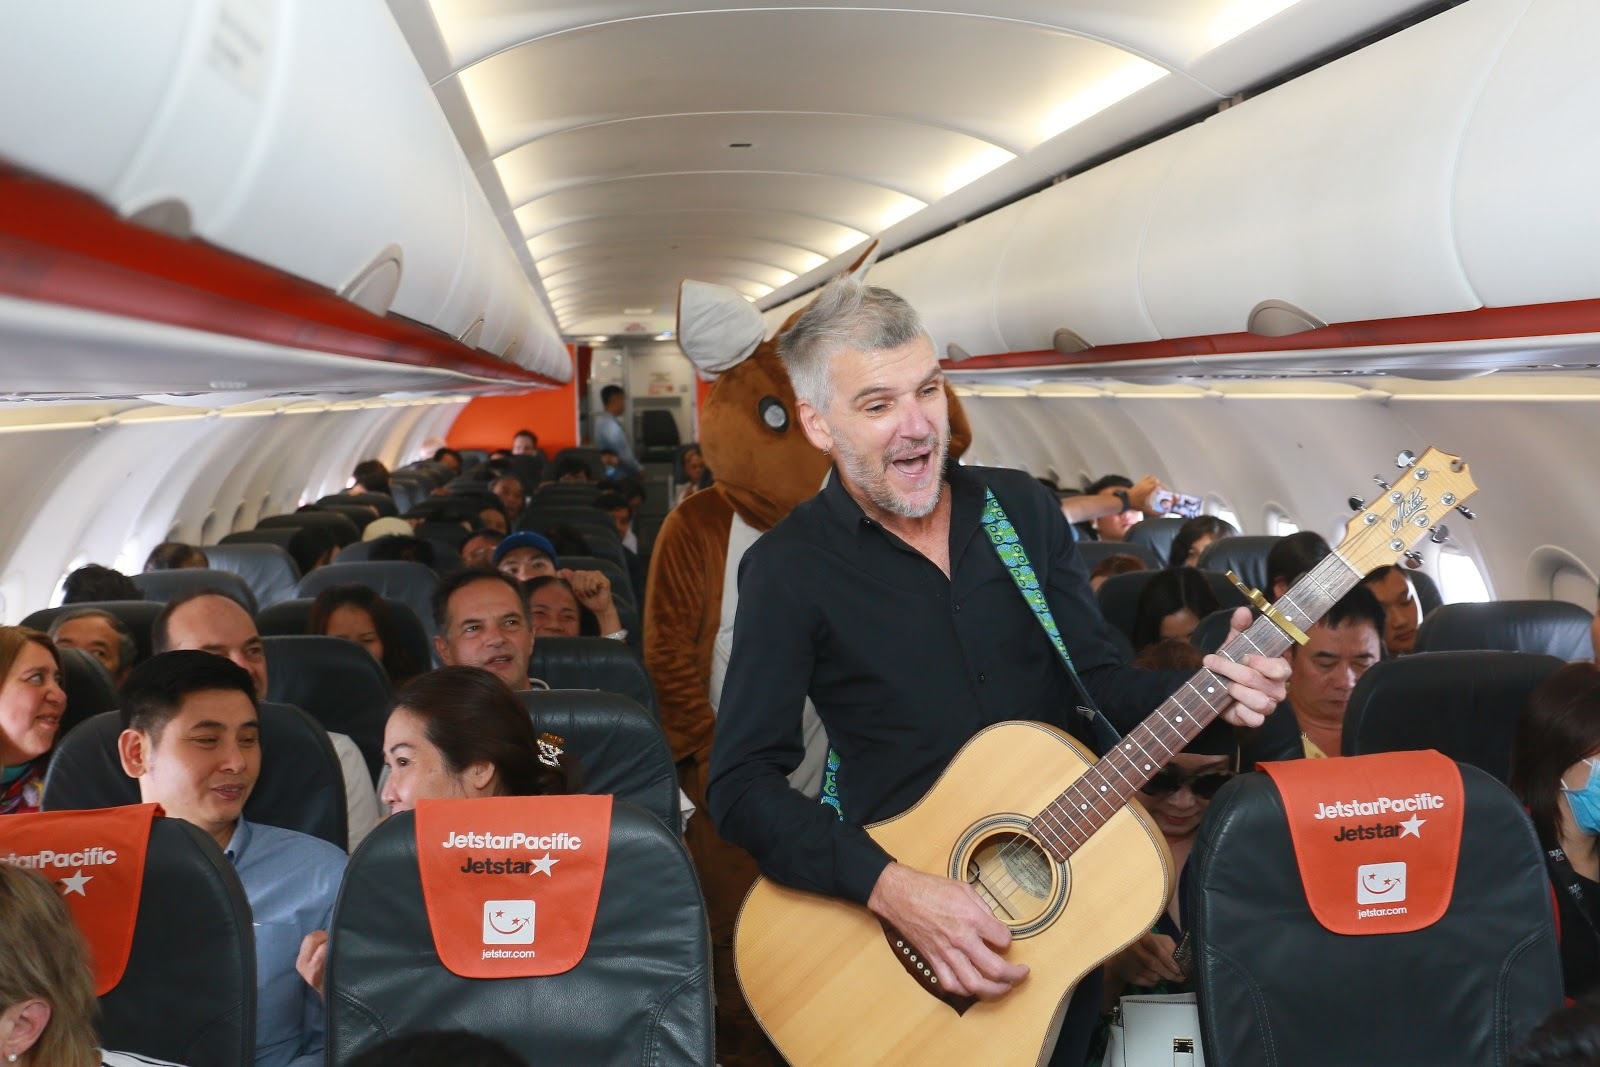 Đại sứ và Tổng lãnh sự Úc mang “đặc sản” nước mình đến hành khách Jetstar